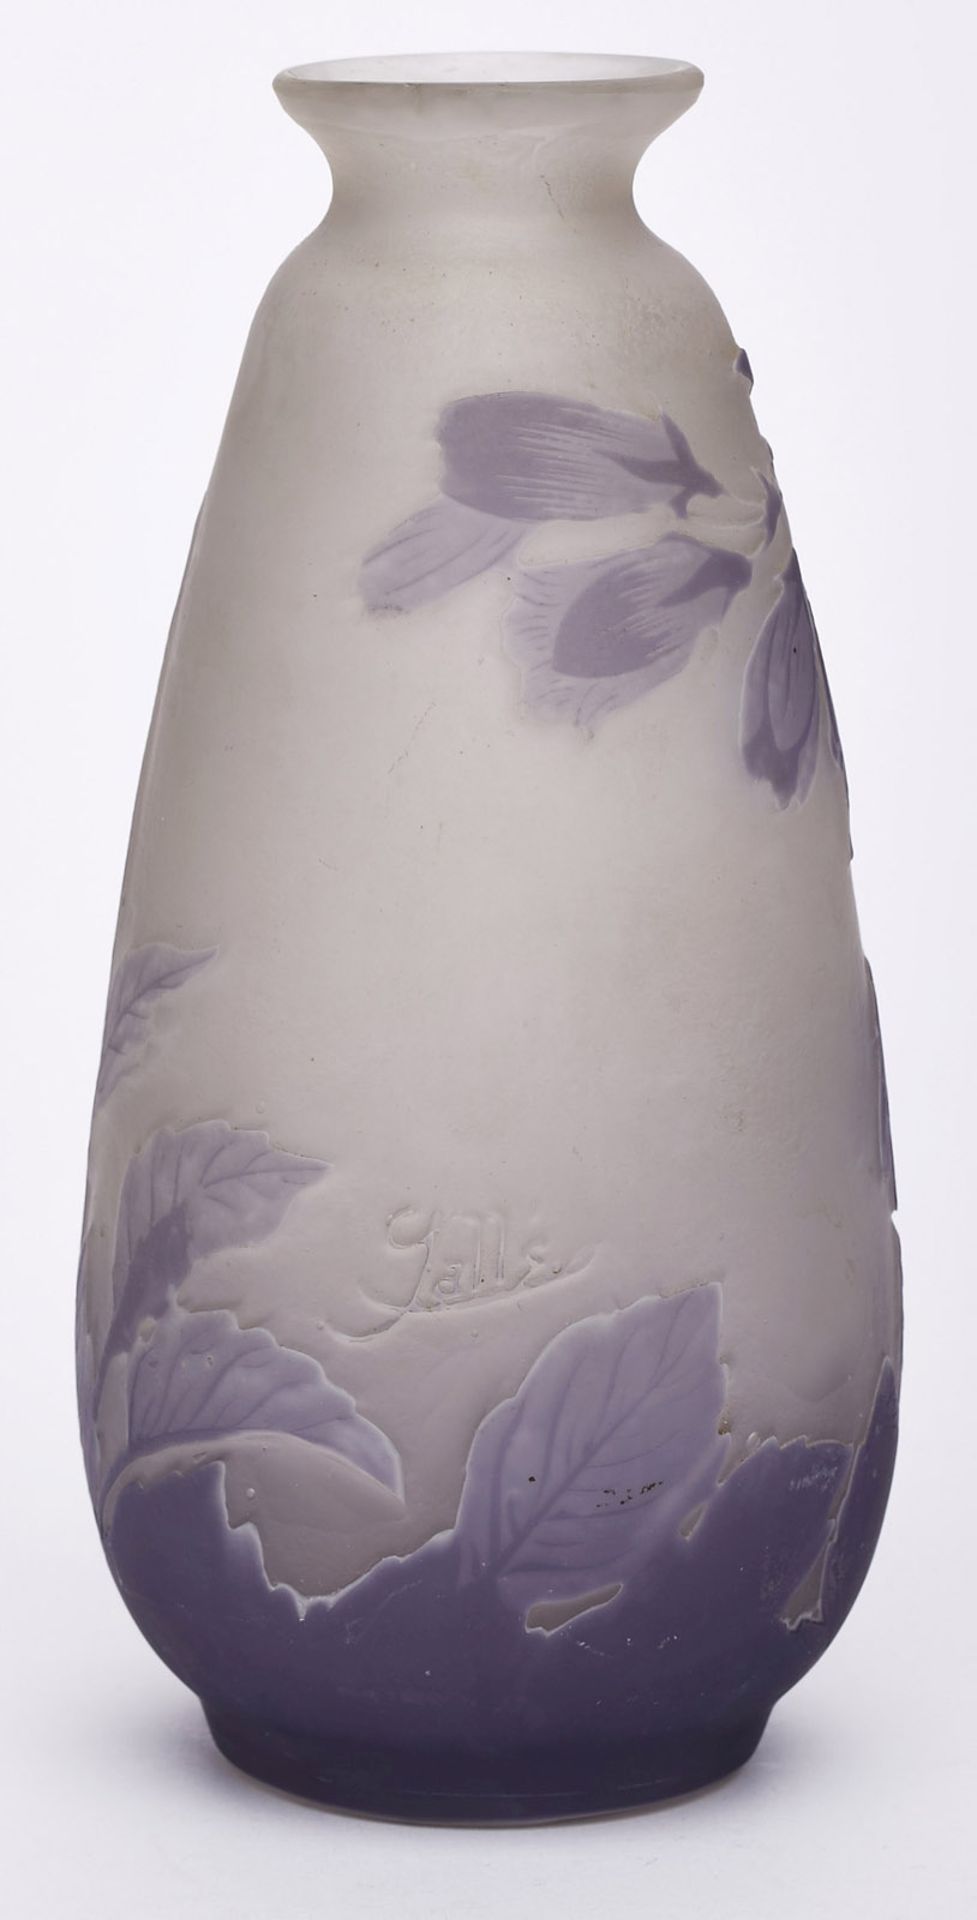 Kl. Vase "Glockenblumen", Jugendstil, Gallé um 1910. - Bild 2 aus 2